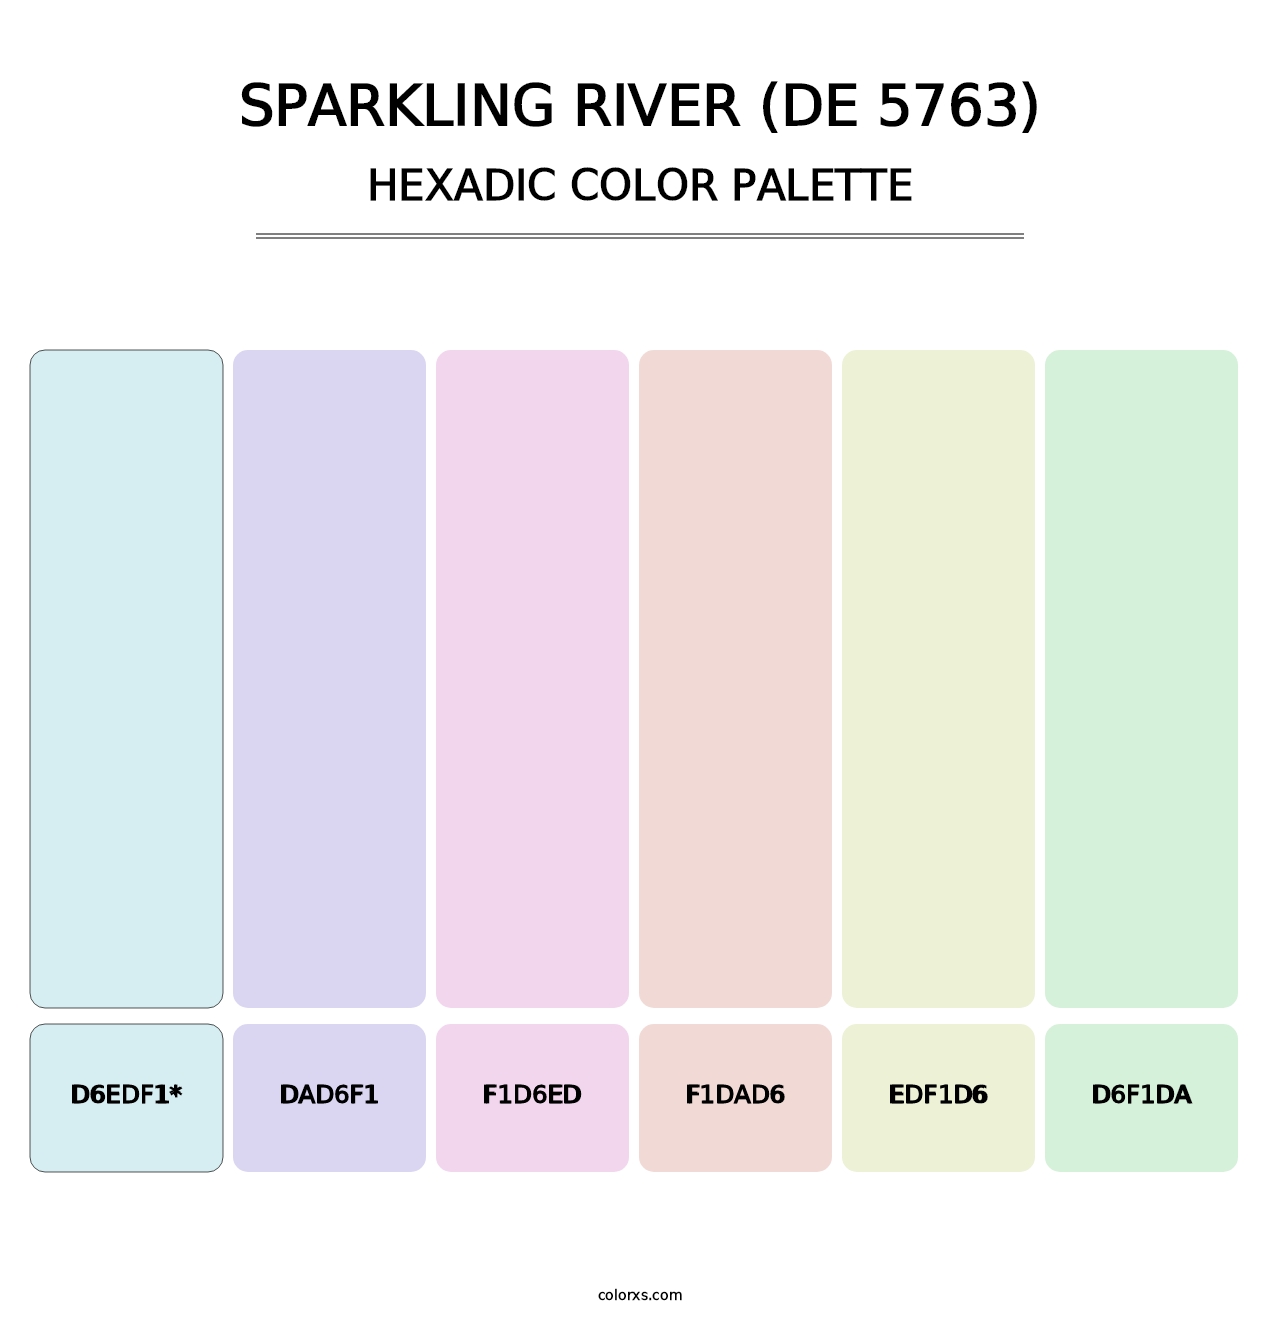 Sparkling River (DE 5763) - Hexadic Color Palette